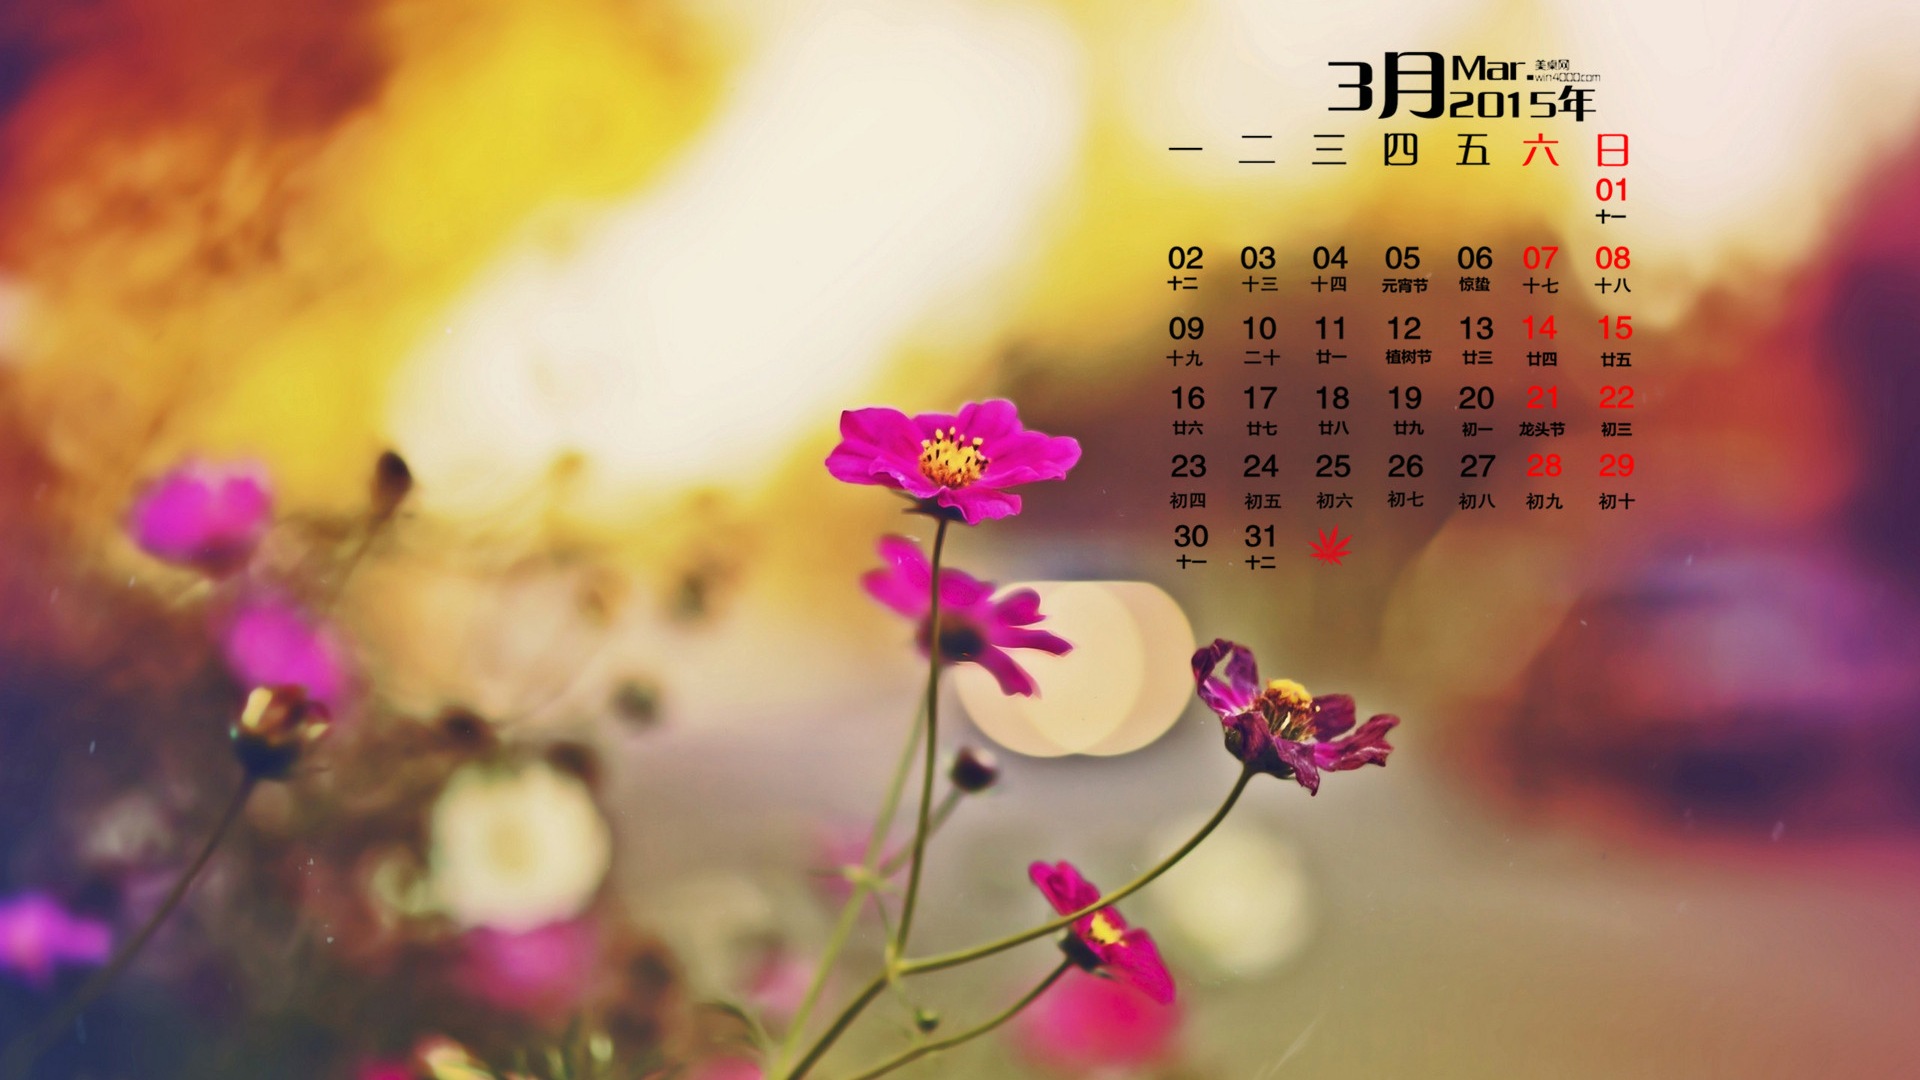 March 2015 Calendar wallpaper (1) #9 - 1920x1080